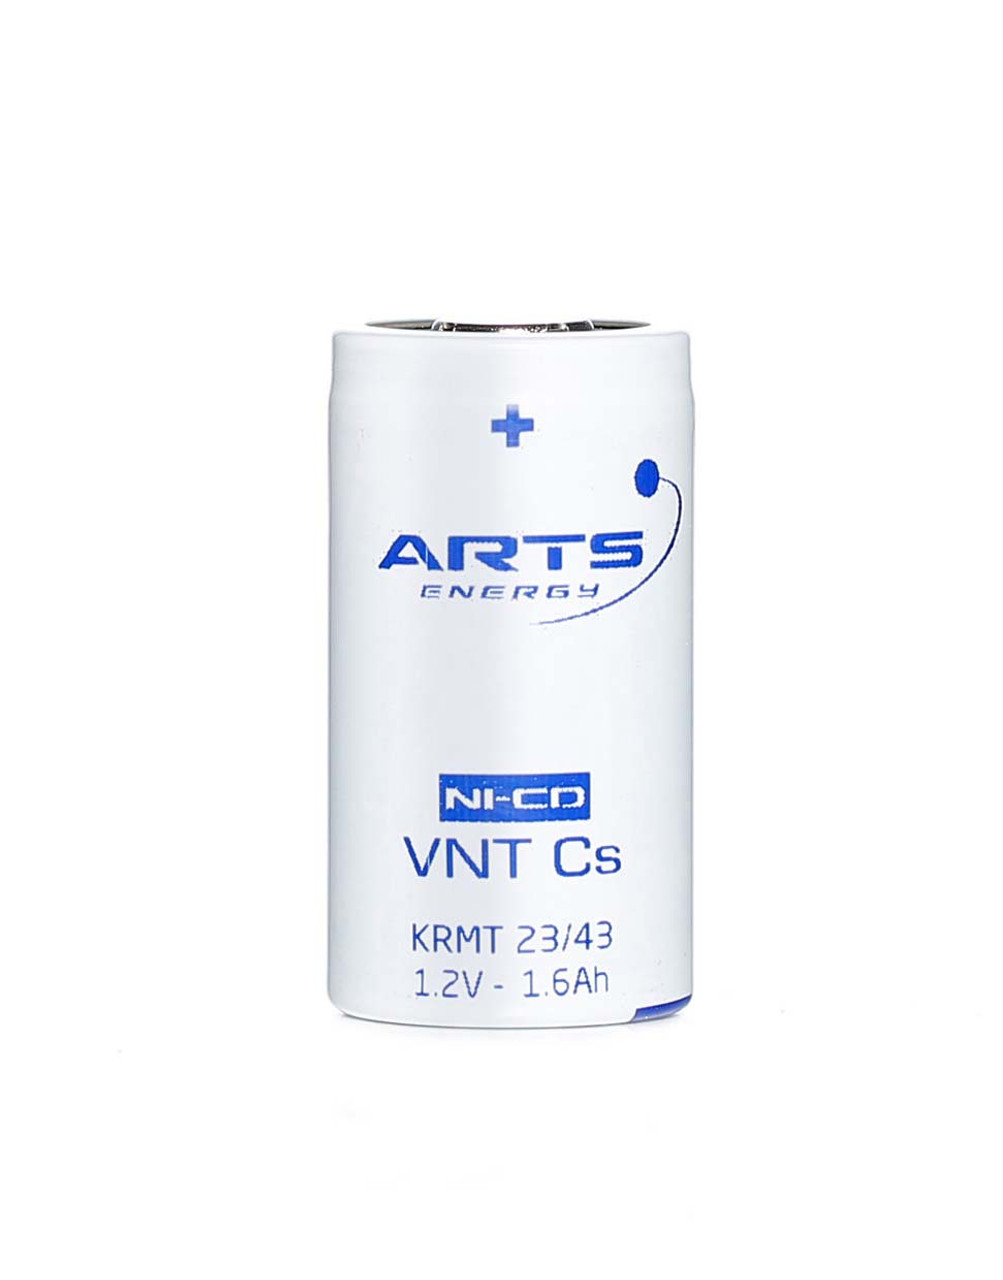 Arts Energy VNT Cs KRMT 23/43 Sub C High Temp Battery